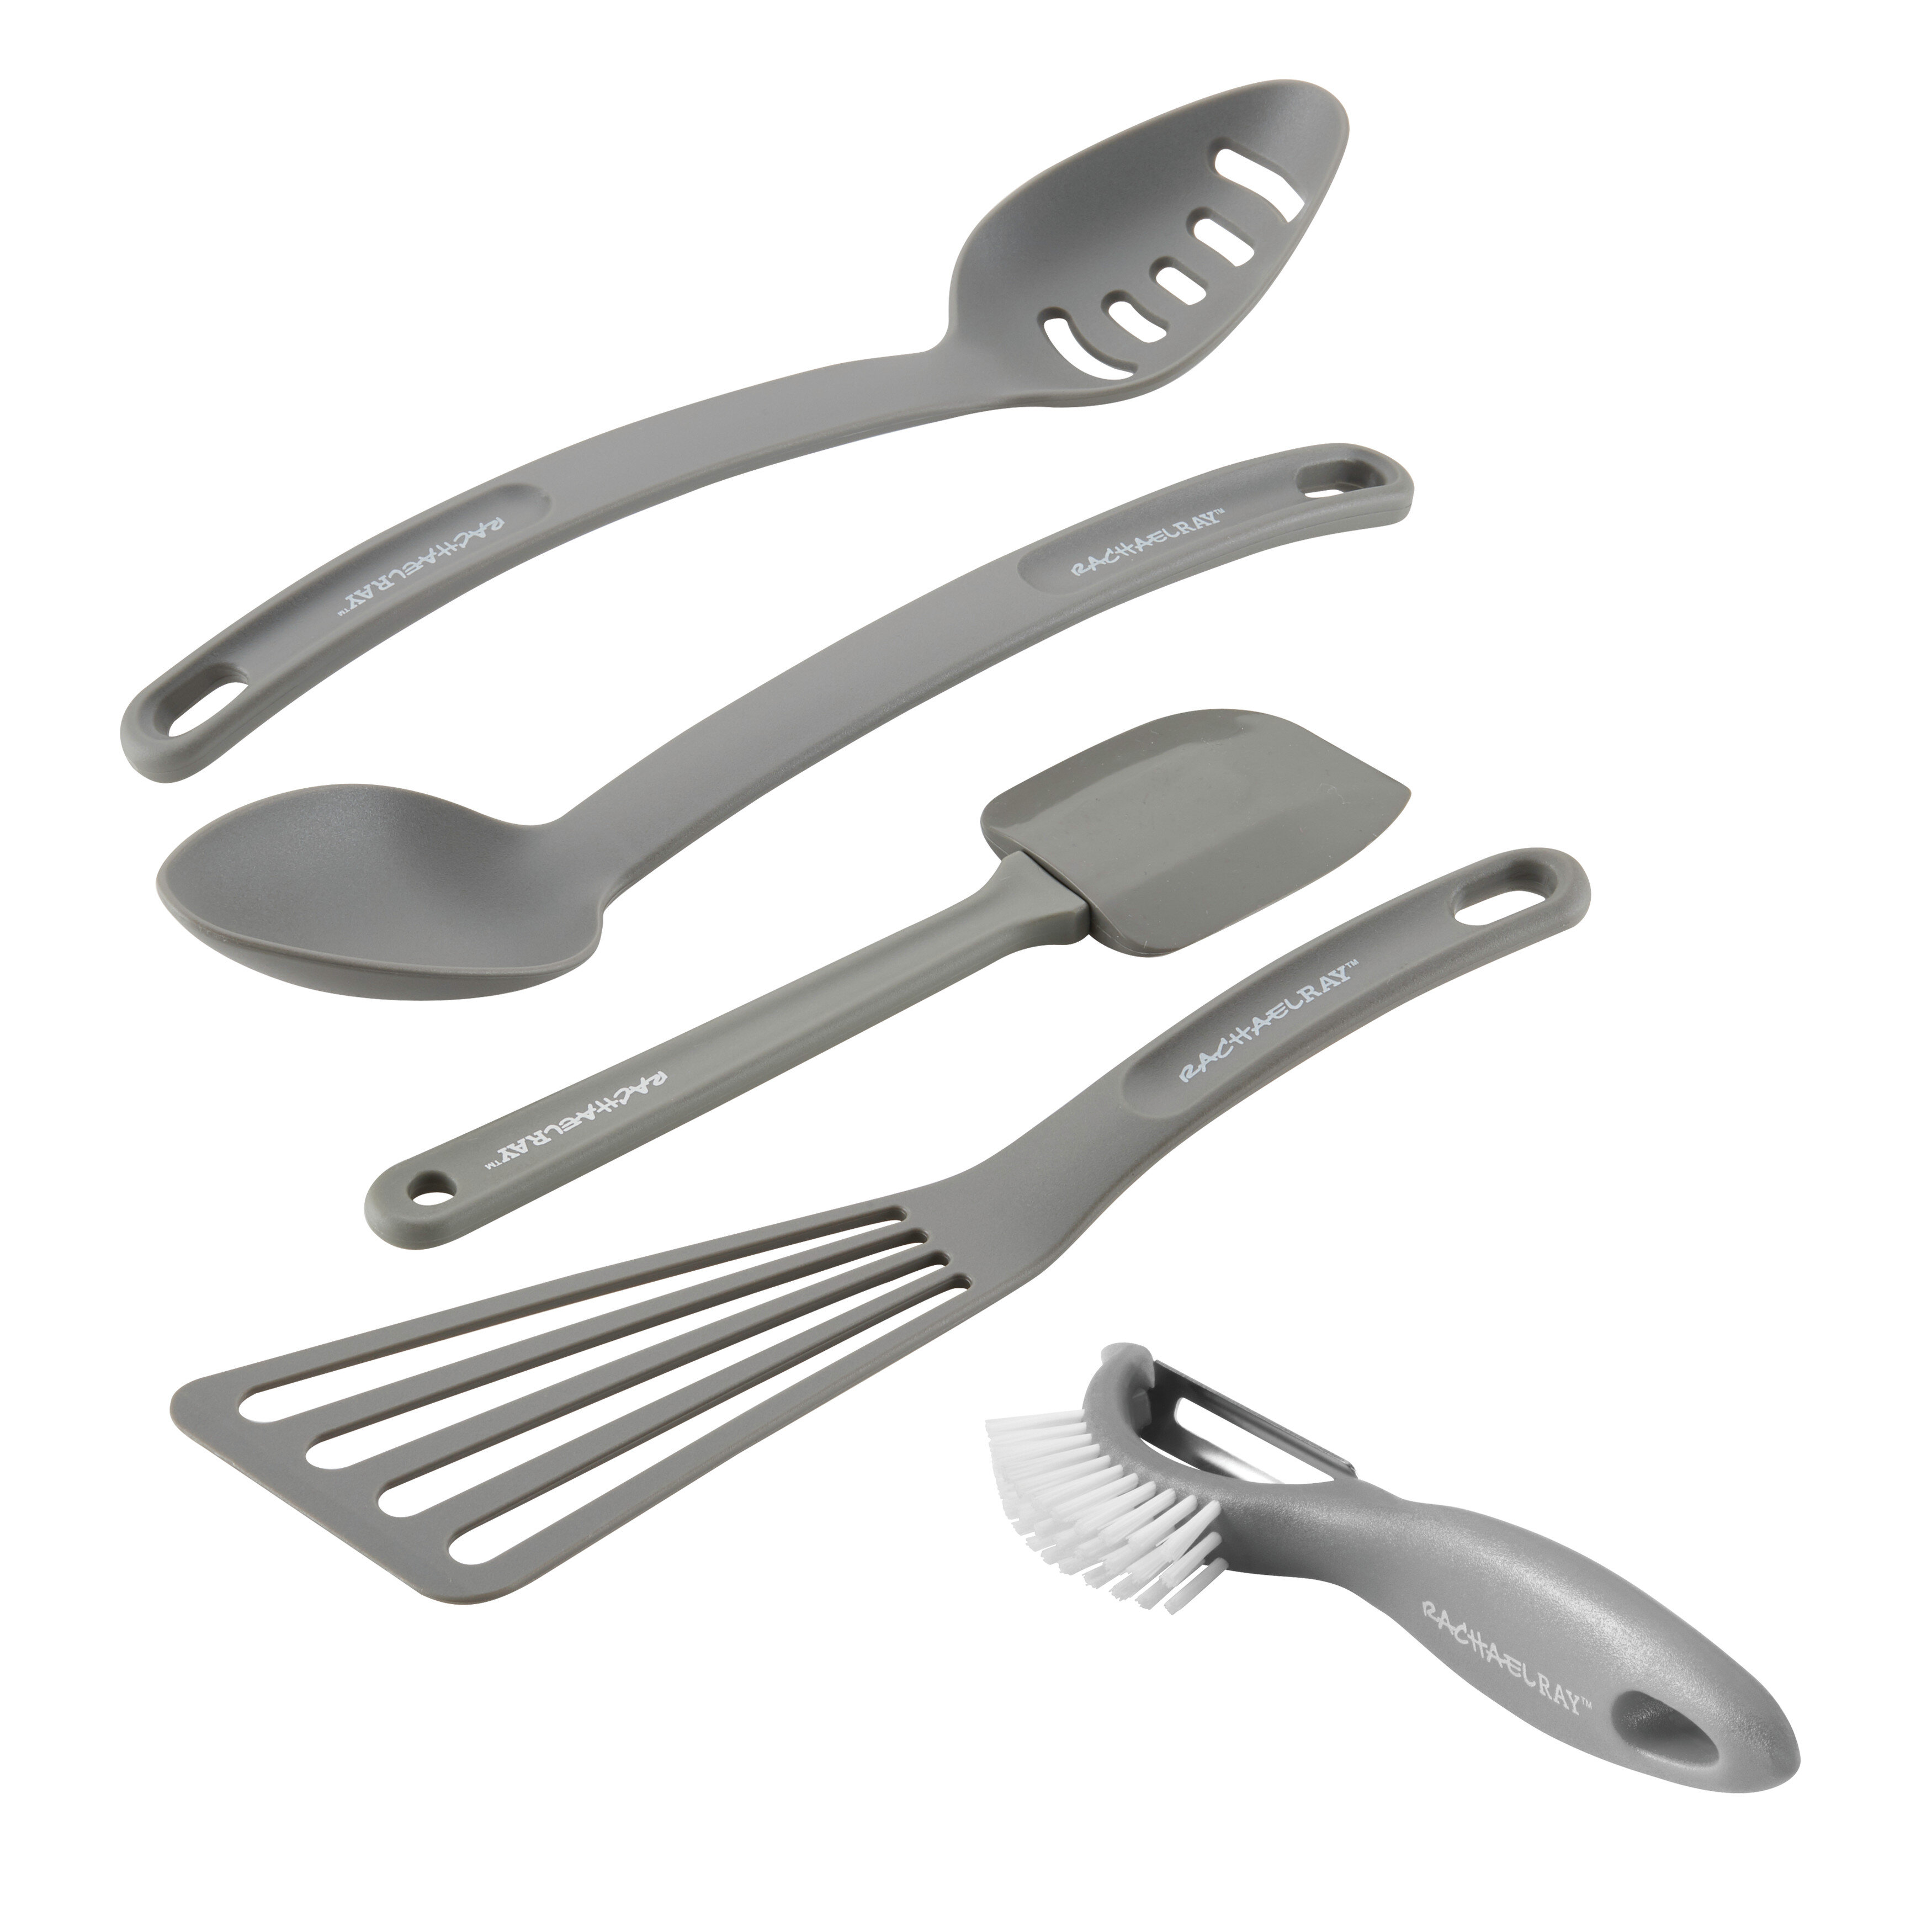 https://assets.wfcdn.com/im/64098221/compr-r85/1292/129206168/rachael-ray-cucina-nylon-nonstick-kitchen-utensil-and-veg-a-peel-set-5-piece.jpg